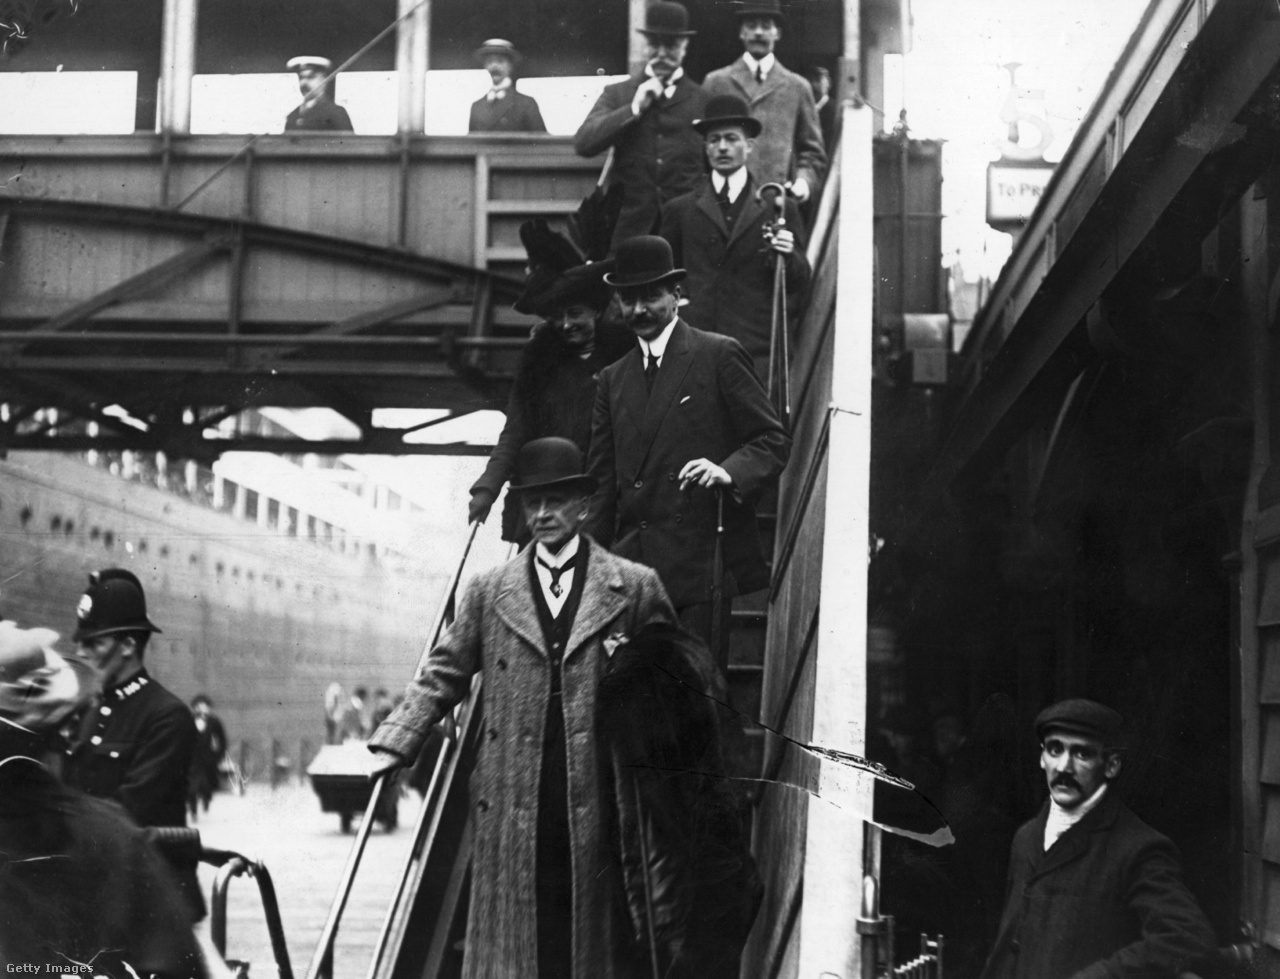 Liverpool, Egyesült Királyság, 1912. május 11. Bruce Ismay, a Titanic katasztrófájának túlélője és a White Star Line elnöke, mögötte felesége és testvére, valamint Harold Sanderson, a White Star hajótársaság elnökhelyettese
                        